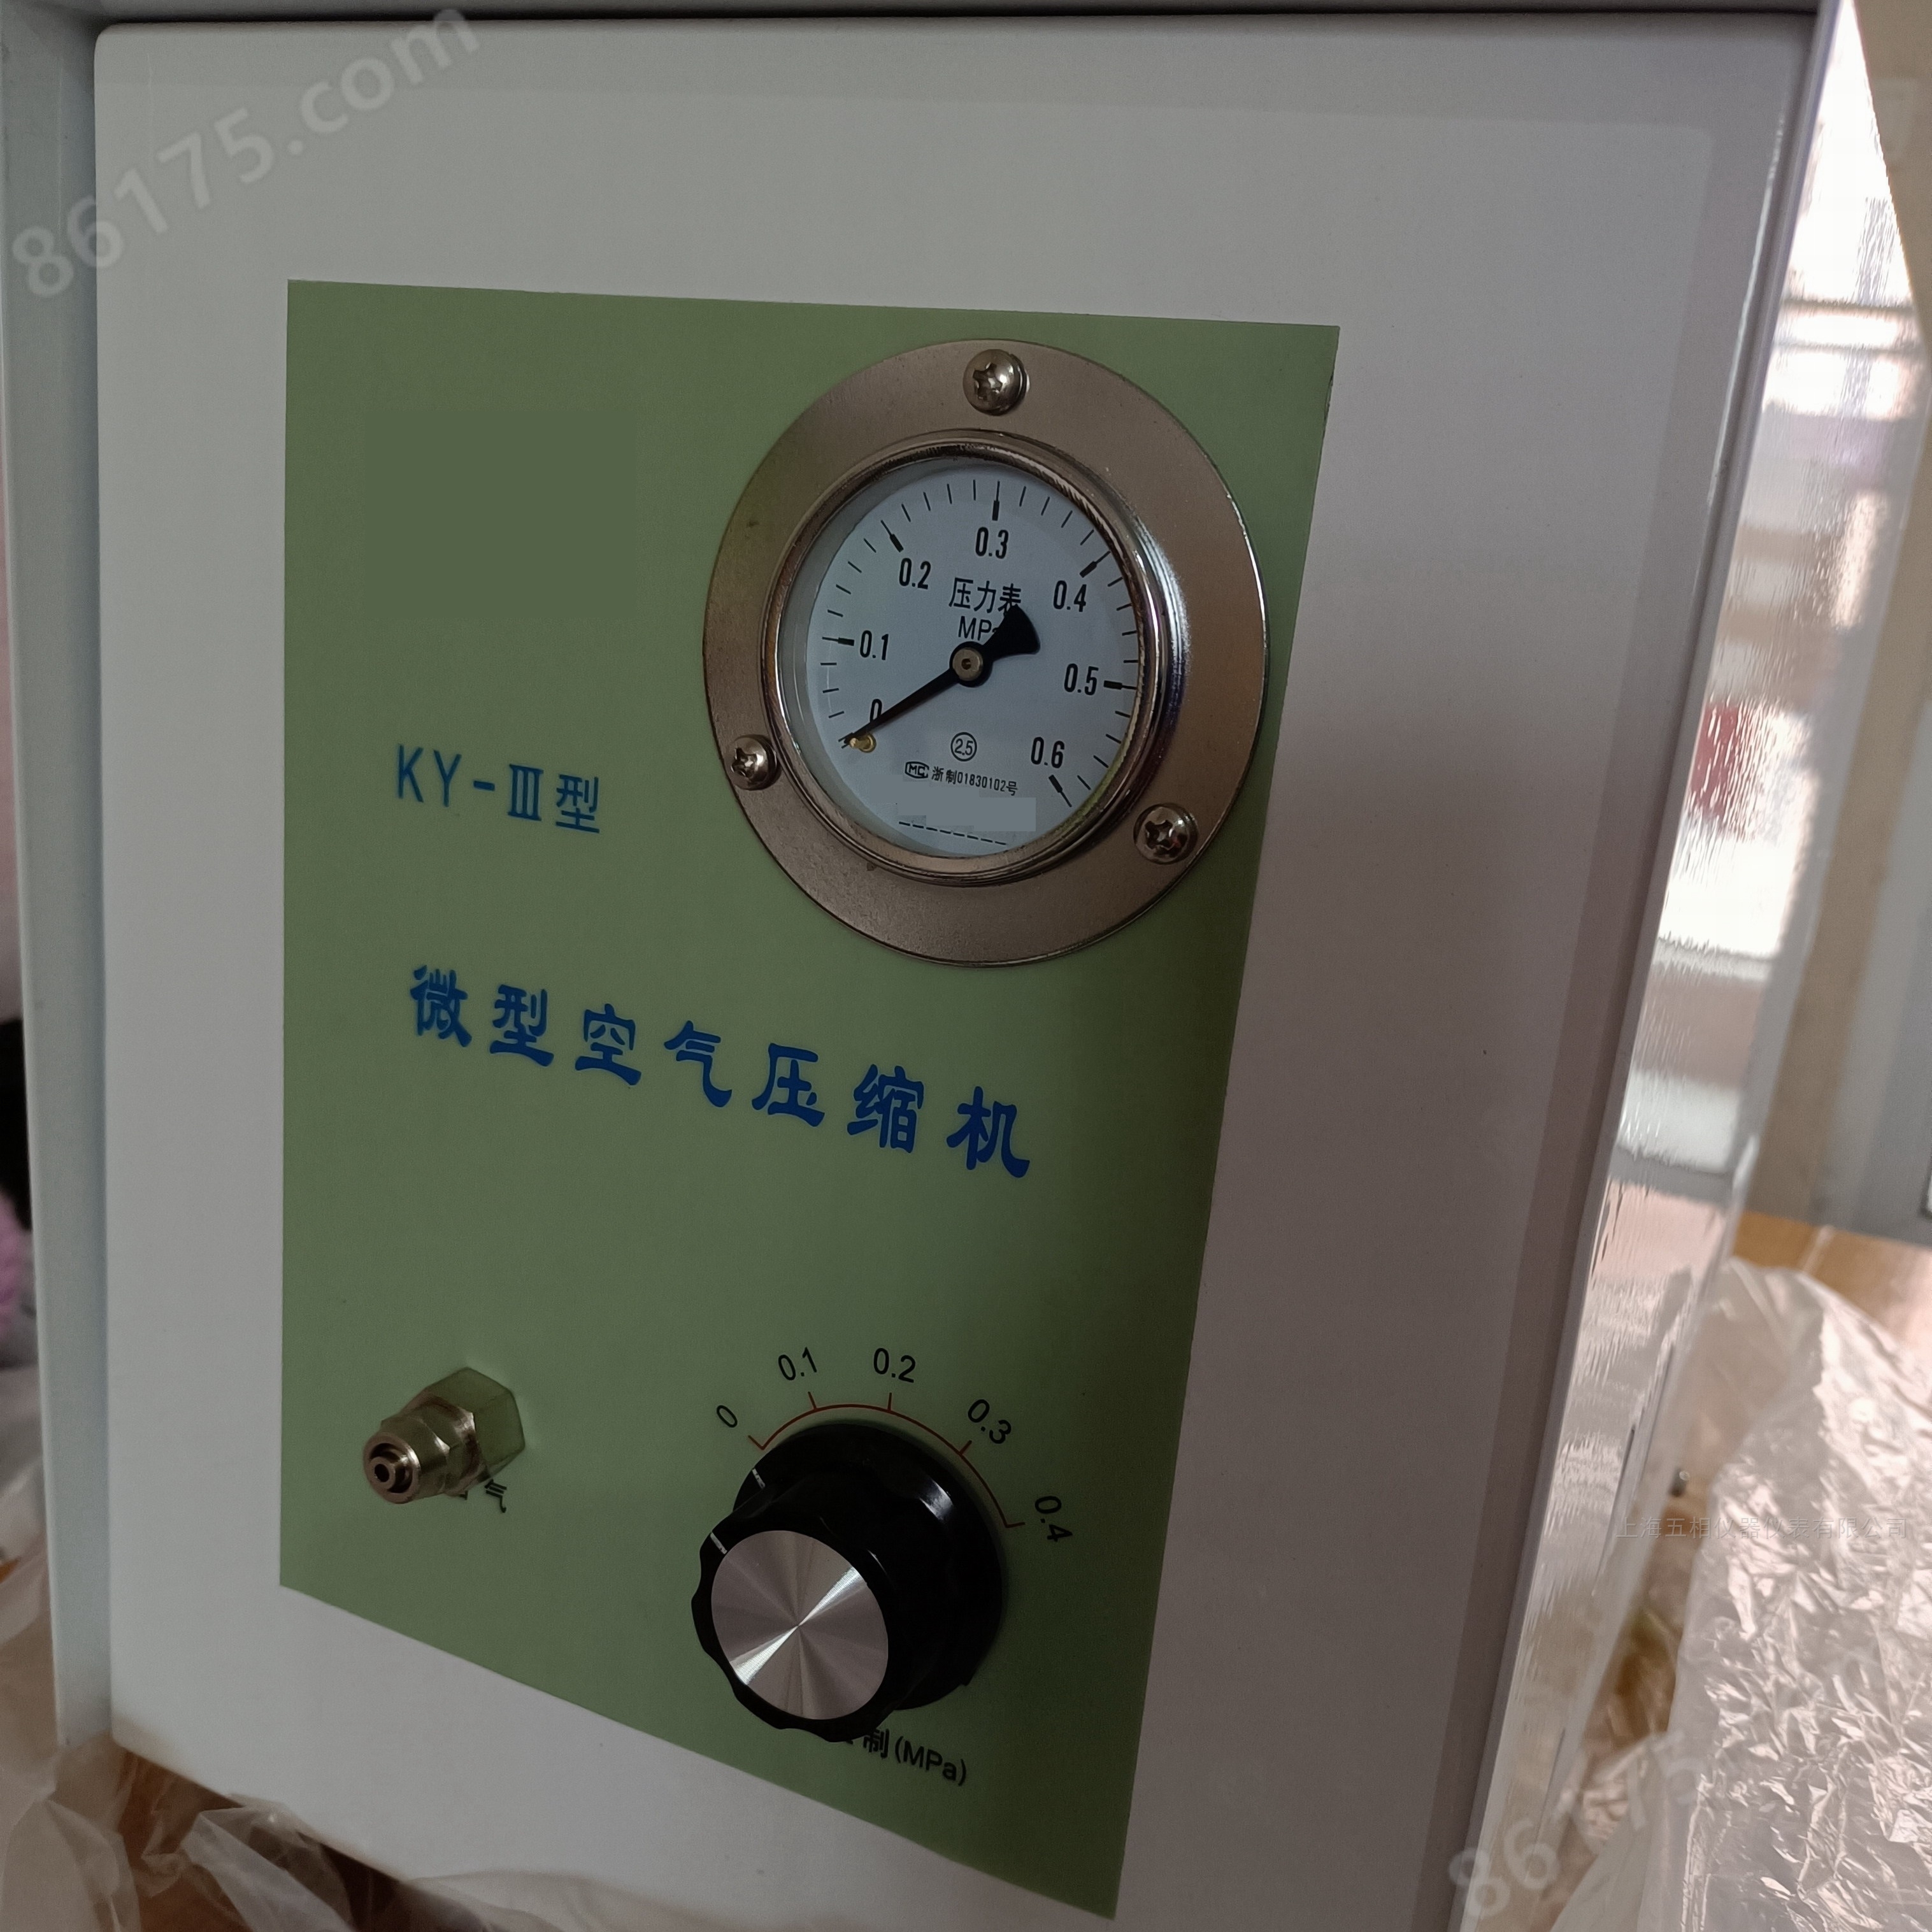 上海五相仪器仪表有限公司